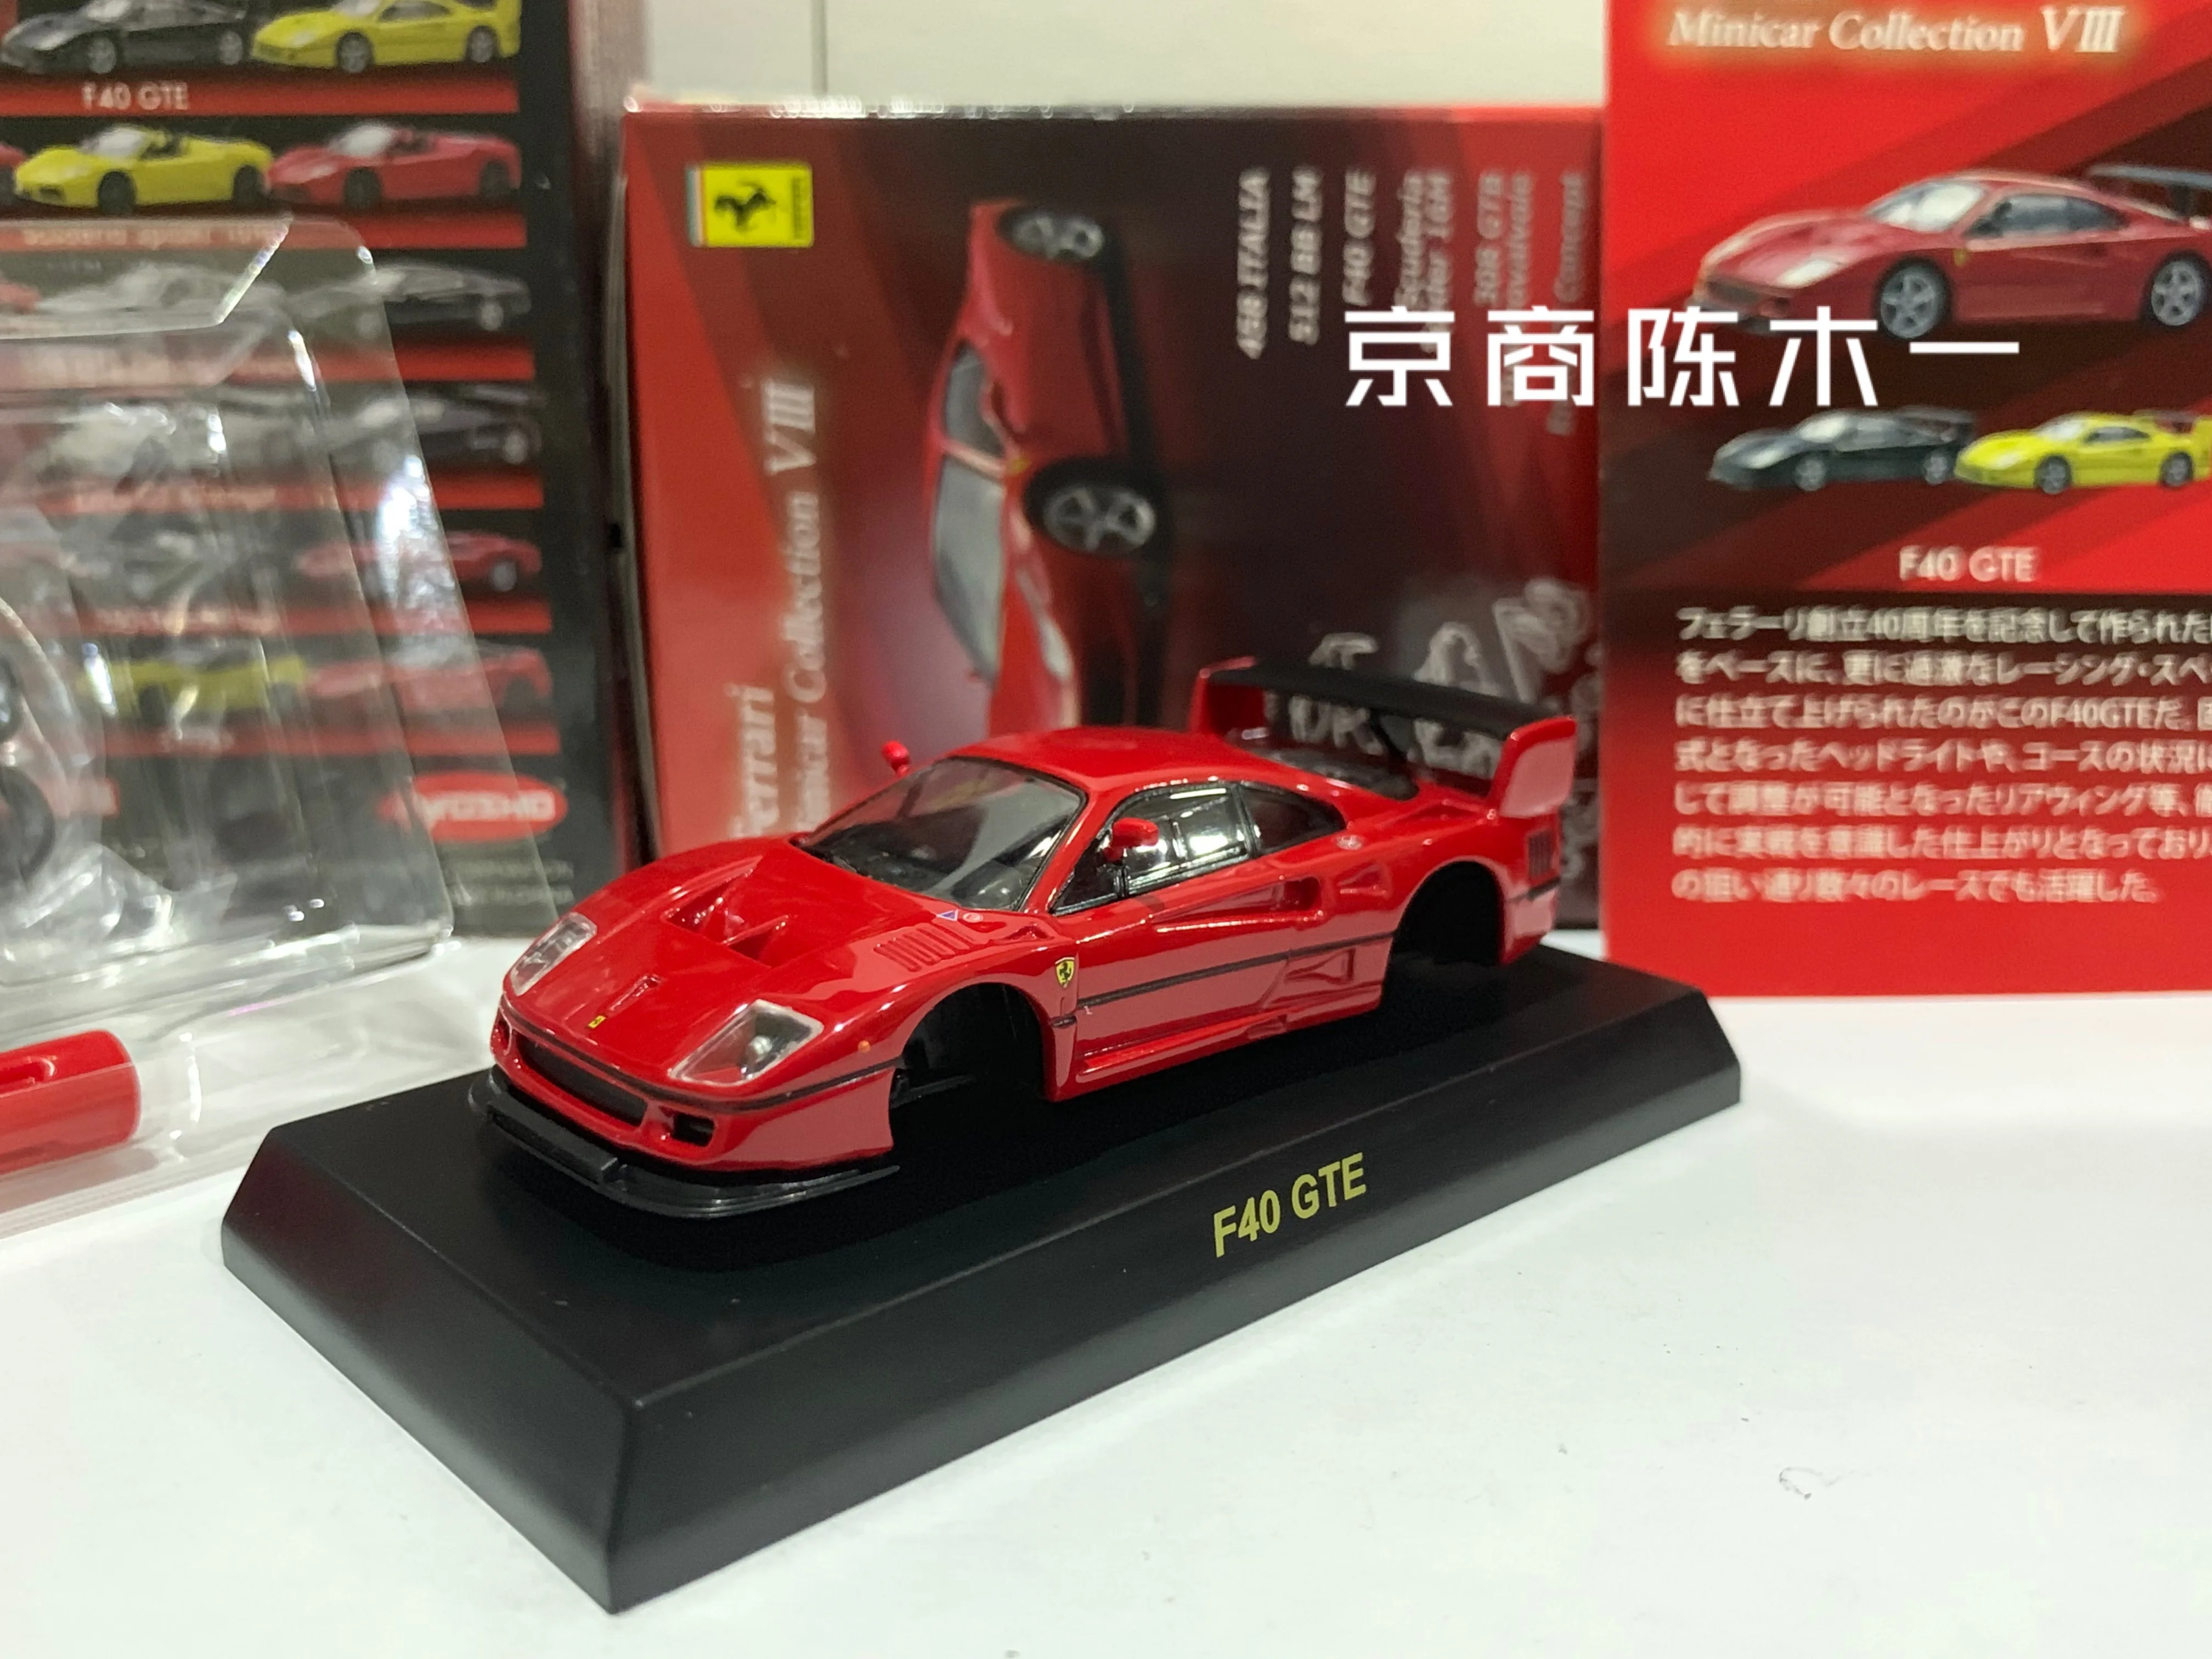 KYOSHO Ferrari F40 GTE 8 rondas LM F1 RACING colección de juguetes de modelos de decoración de coche ensamblados de aleación fundida a presión 1/64